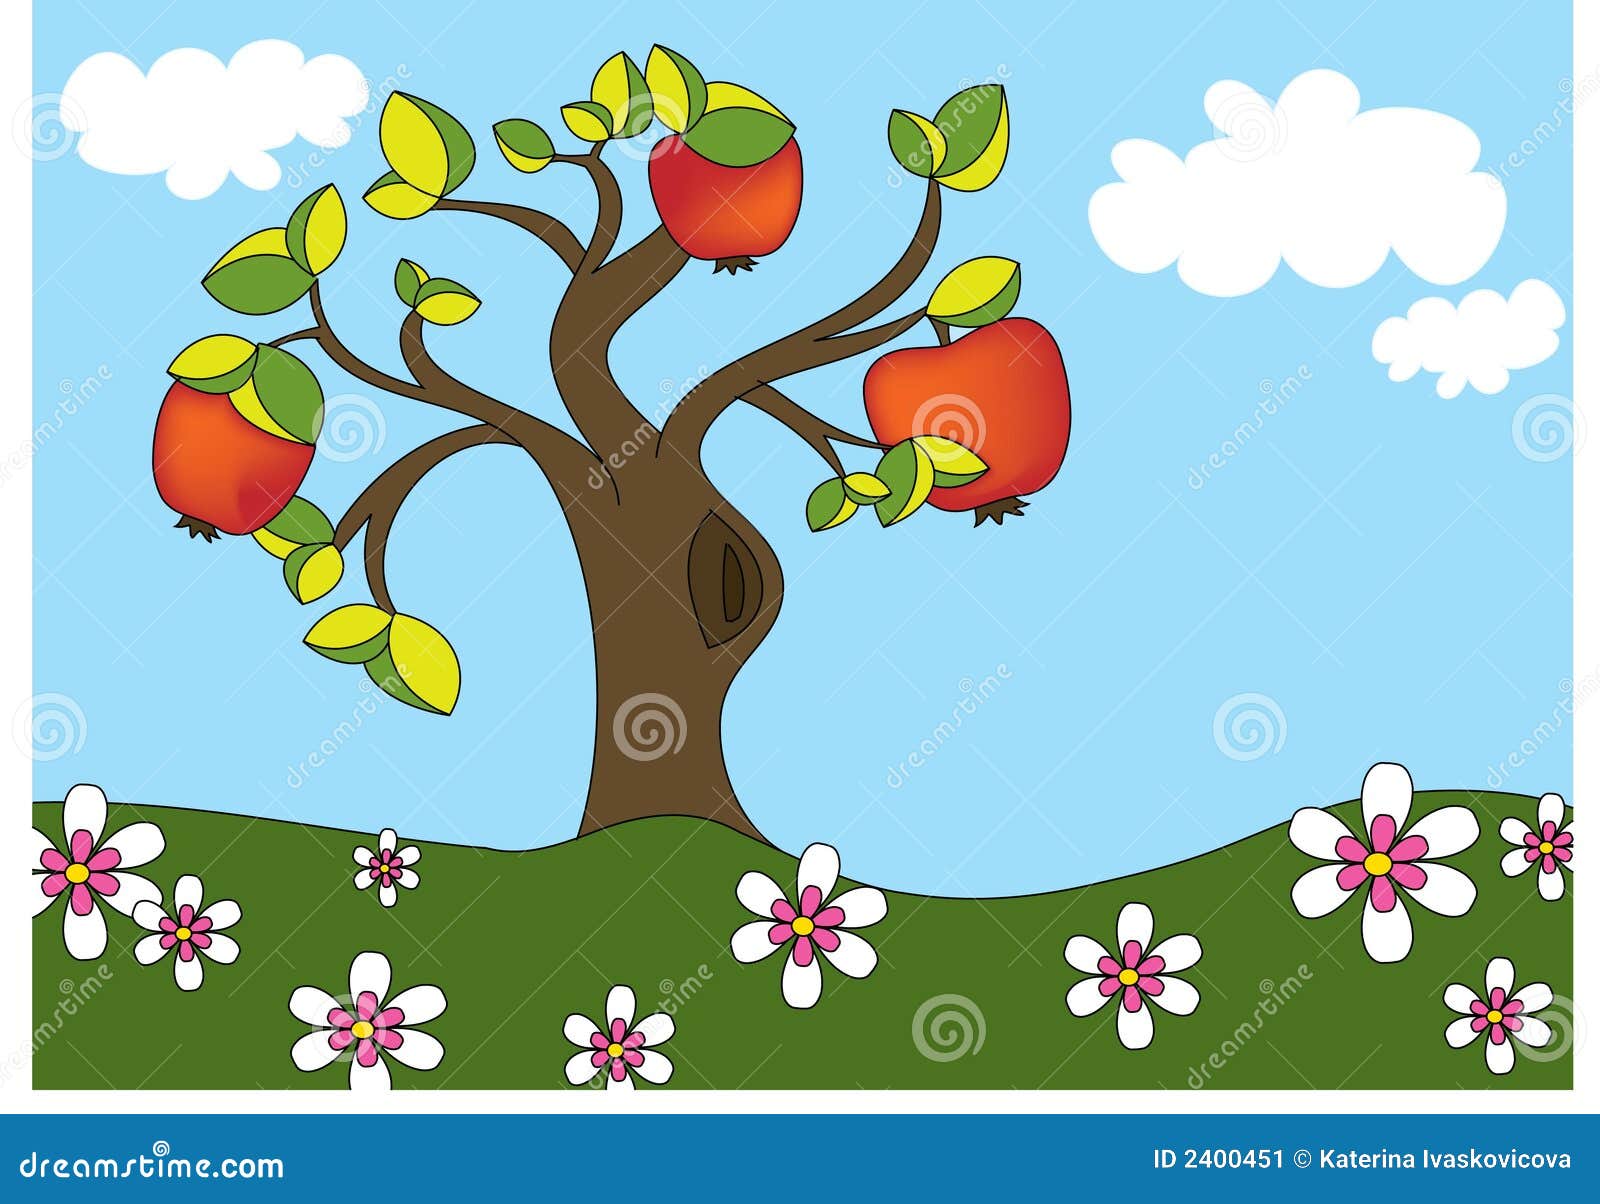 苹果树图片 卡通生长图片